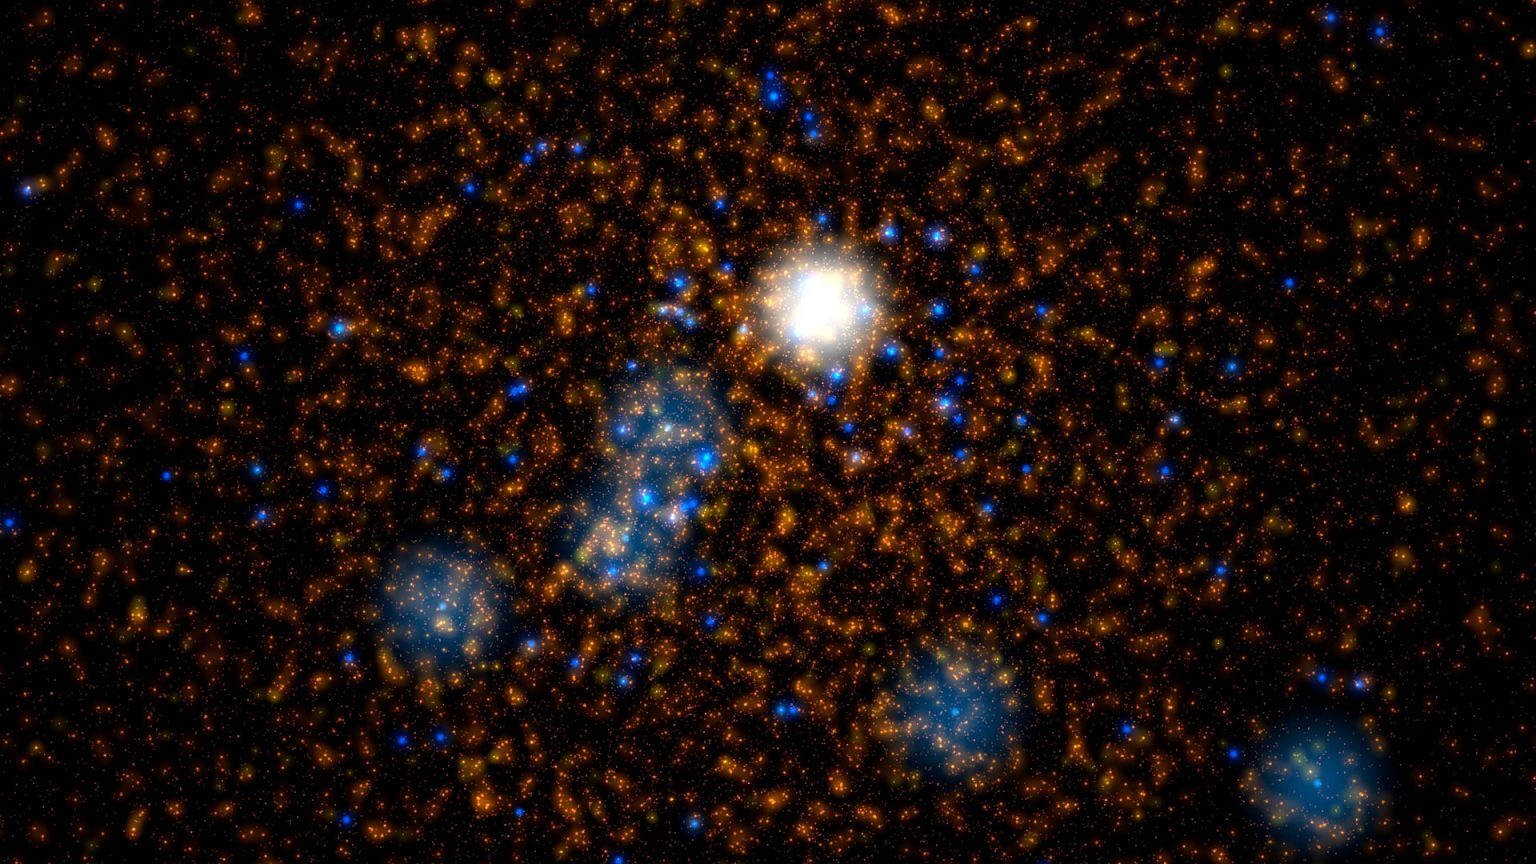 התמונה מתארת הדמייה של צביר כוכבים כפי שהופק בהדמיות Dragon-II. נקודות כתומות וצהובות מייצגות כוכבים דמויי שמש, בעוד שהנקודות הכחולות מציינות כוכבים בעלי מסה של פי 20 עד 300 מזו של השמש. העצם הלבן הגדול במרכז מייצג כוכב בעל מסה של כ-350 מסות שמש, אשר בקרוב יקרוס וייצור חור שחור בעל מסה בינונית. קרדיט: © M. Arca Sedda (GSSI)